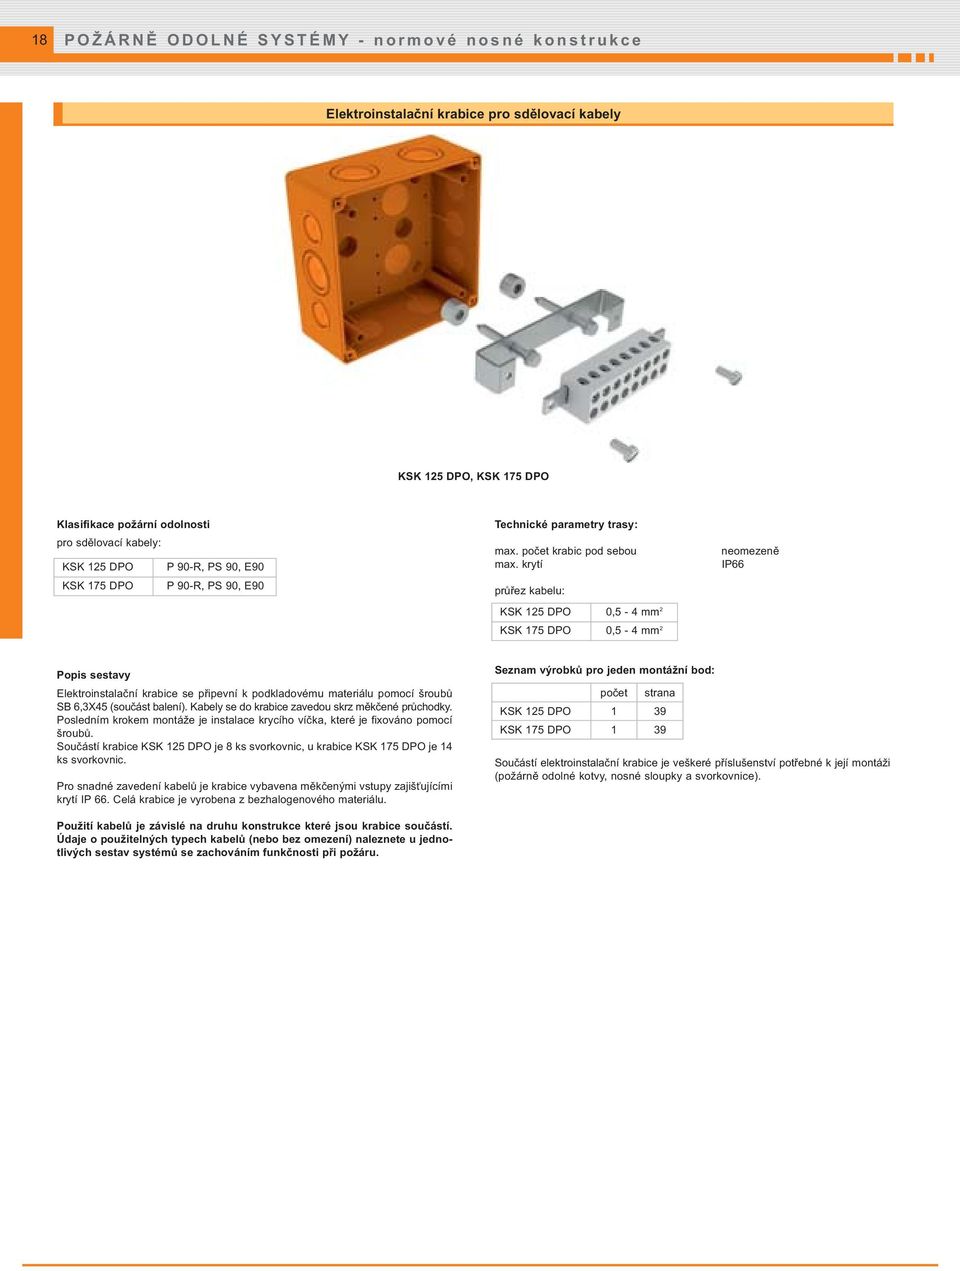 krytí průřez kabelu: KSK 125 DPO 0,5-4 mm 2 KSK 175 DPO 0,5-4 mm 2 neomezeně IP66 Popis sestavy Elektroinstalační krabice se připevní k podkladovému materiálu pomocí šroubů SB 6,3X45 (součást balení).